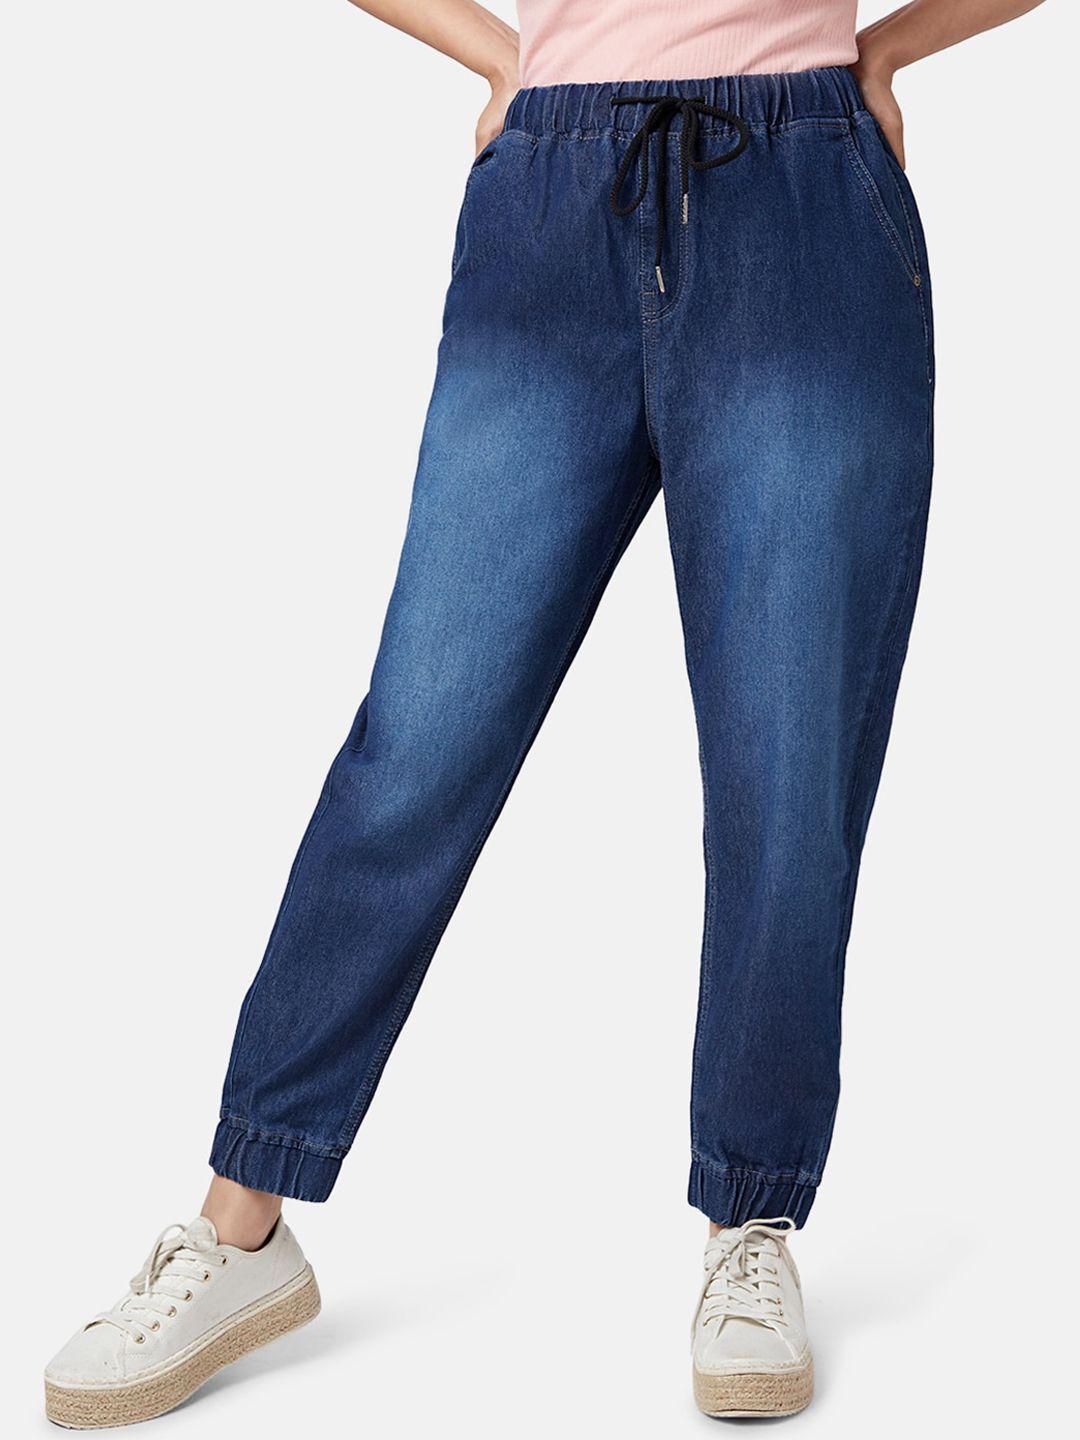 yu by pantaloons women heavy fade jogger jeans